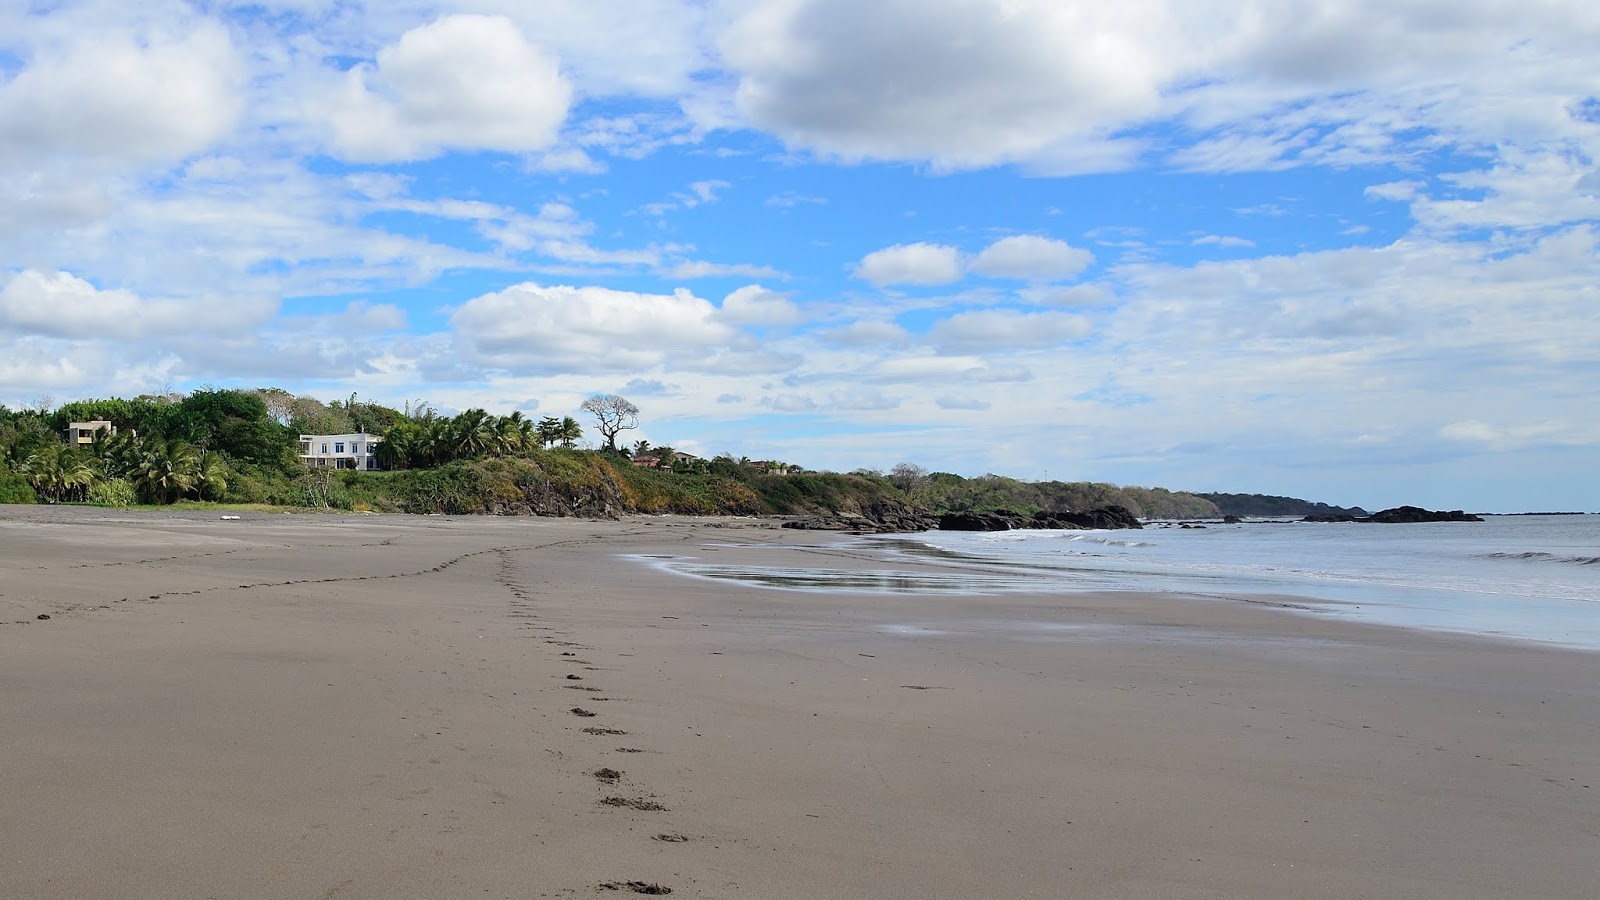 Foto von Playa Azul mit grauer sand&steine Oberfläche